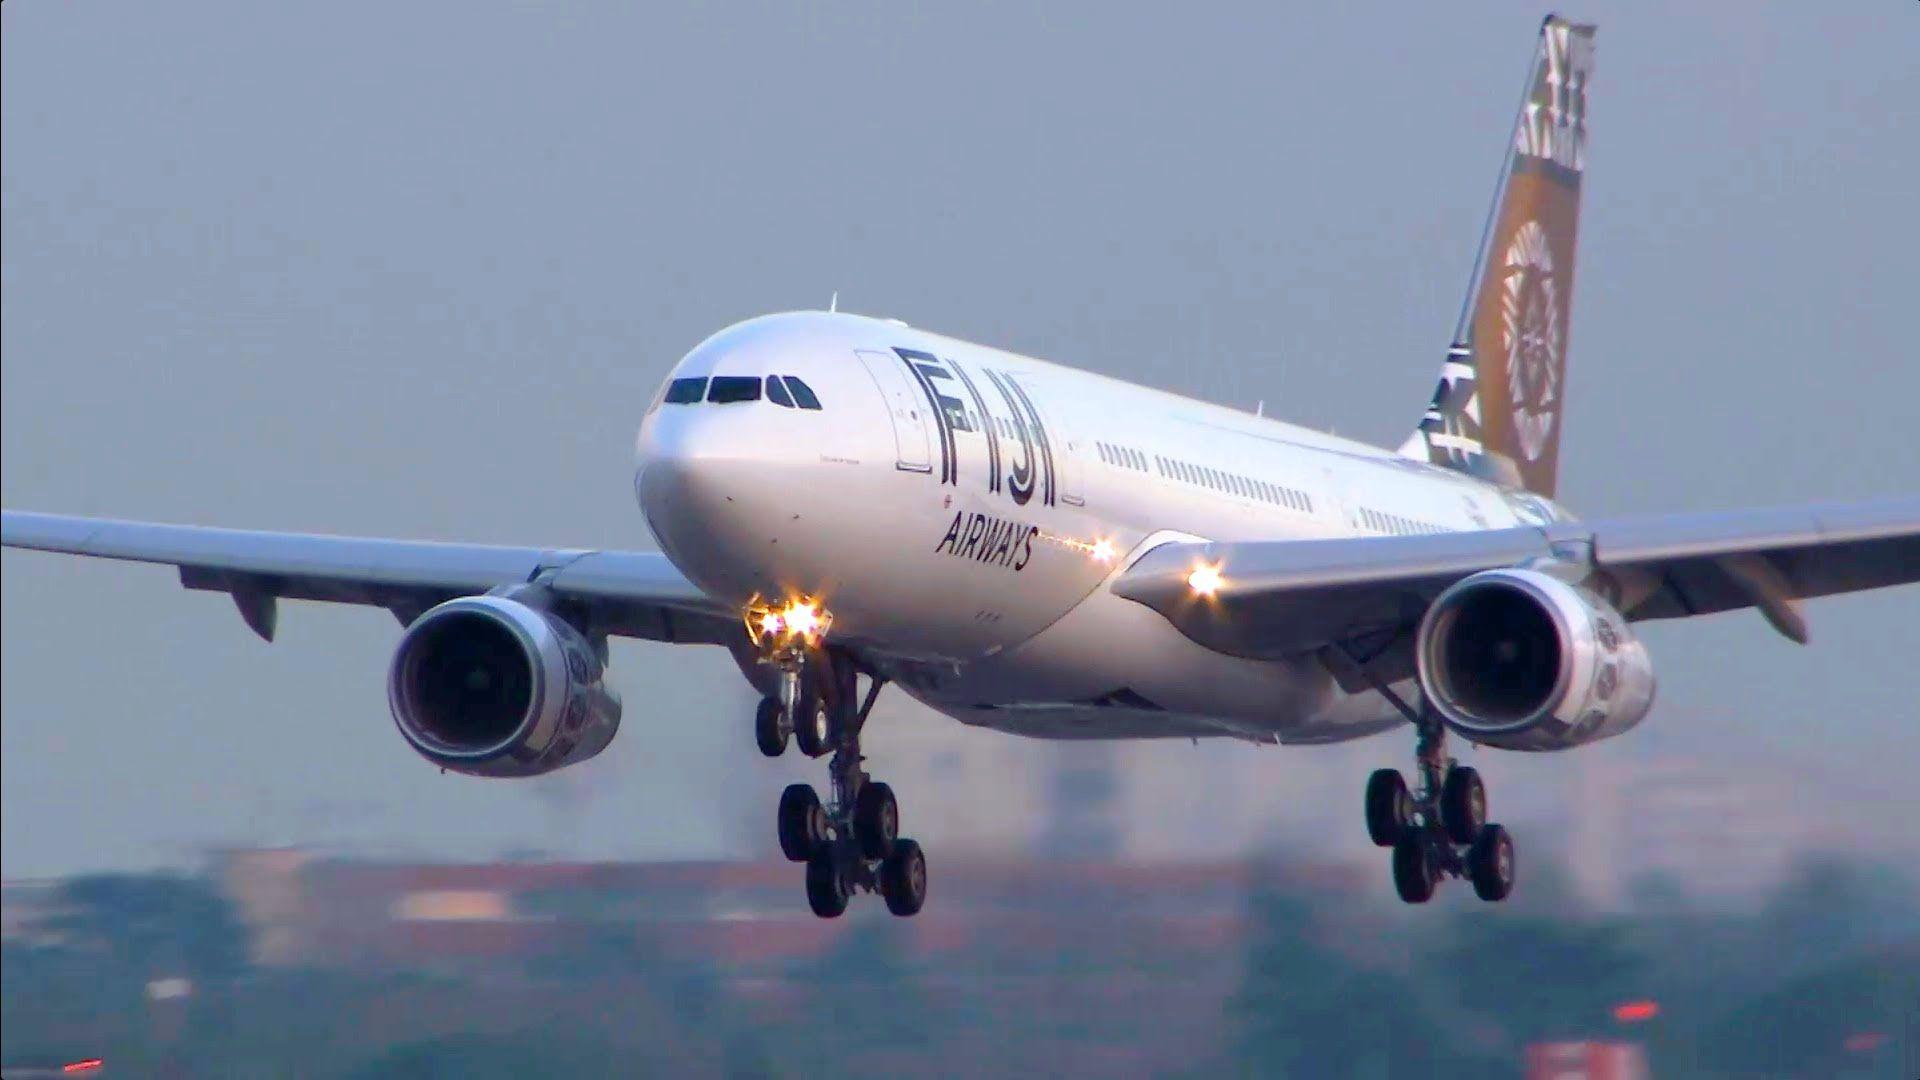 ✈ Airbus A330 200 Fiji Airways Up, Take Off, Landing